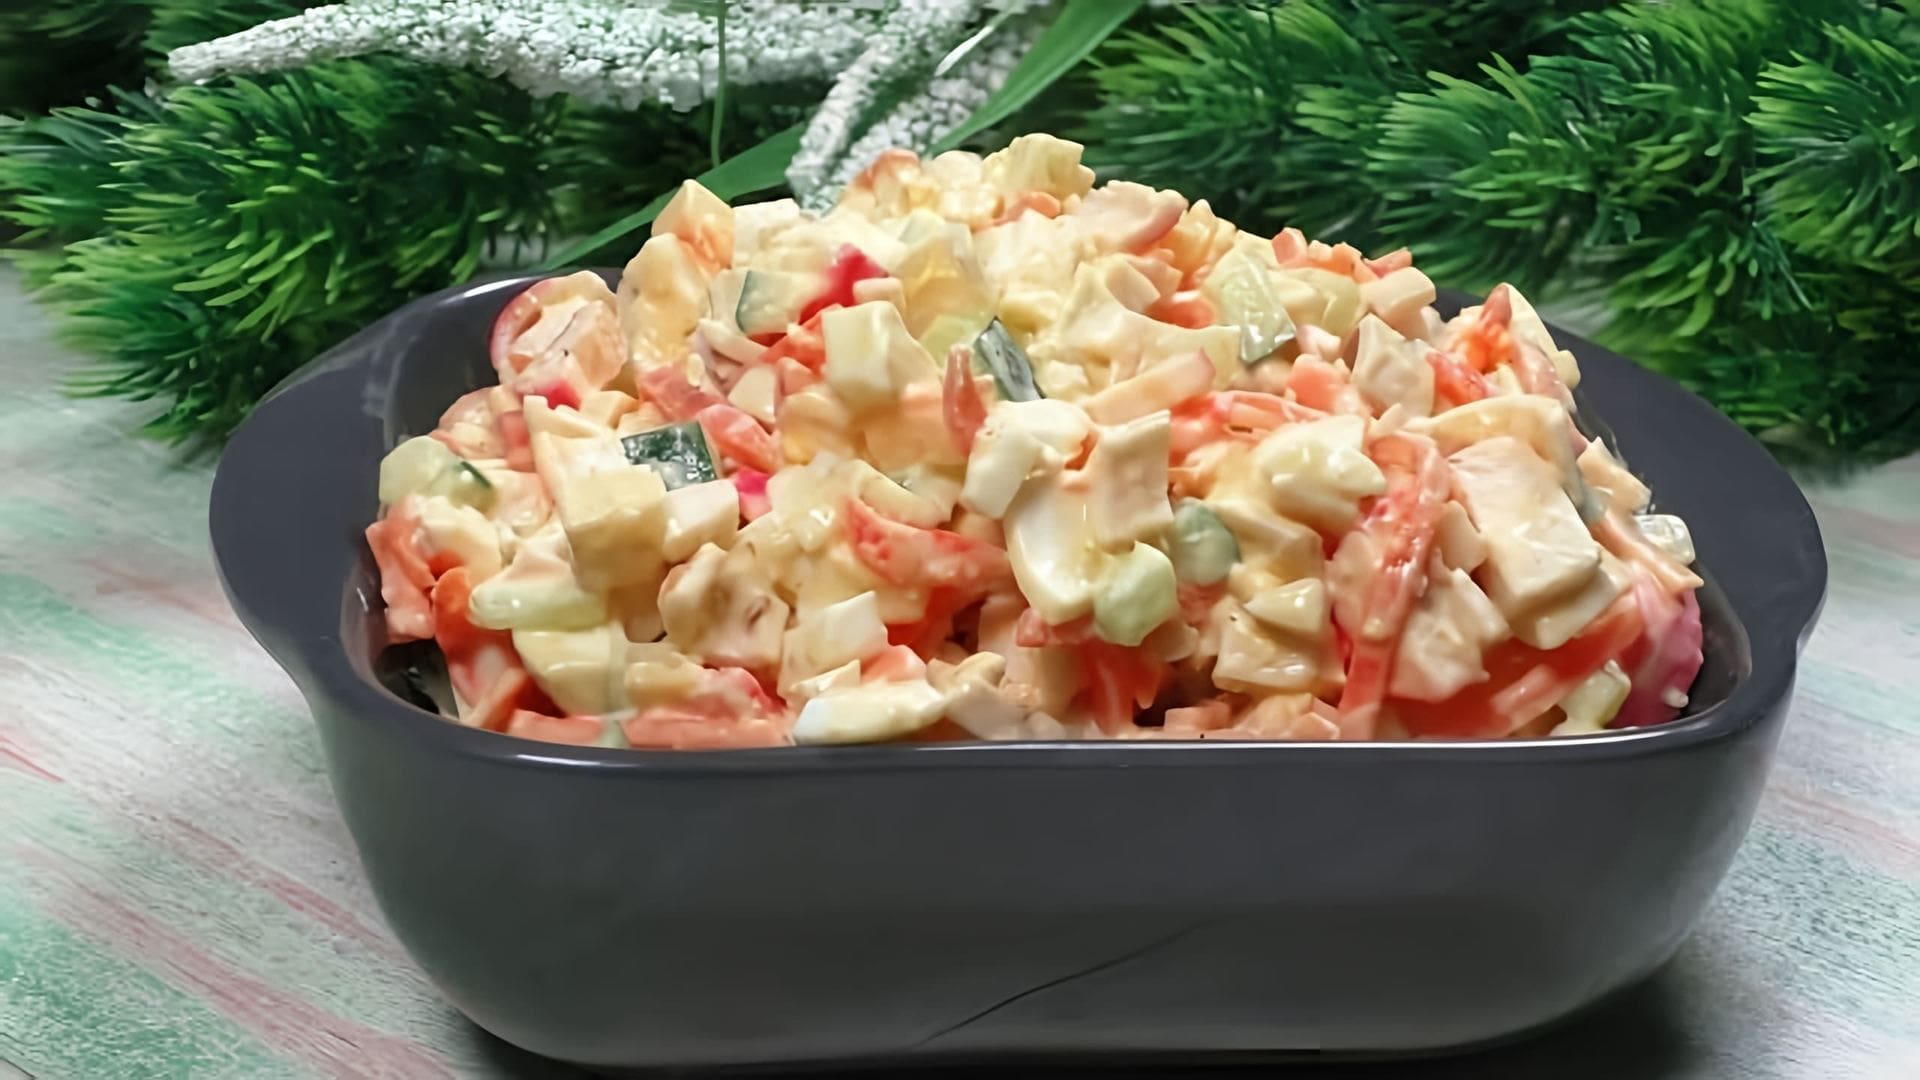 Вкусный салат из крабовых палочек с сыром и морковью по-корейски - это легкое и быстрое блюдо, которое можно приготовить в домашних условиях